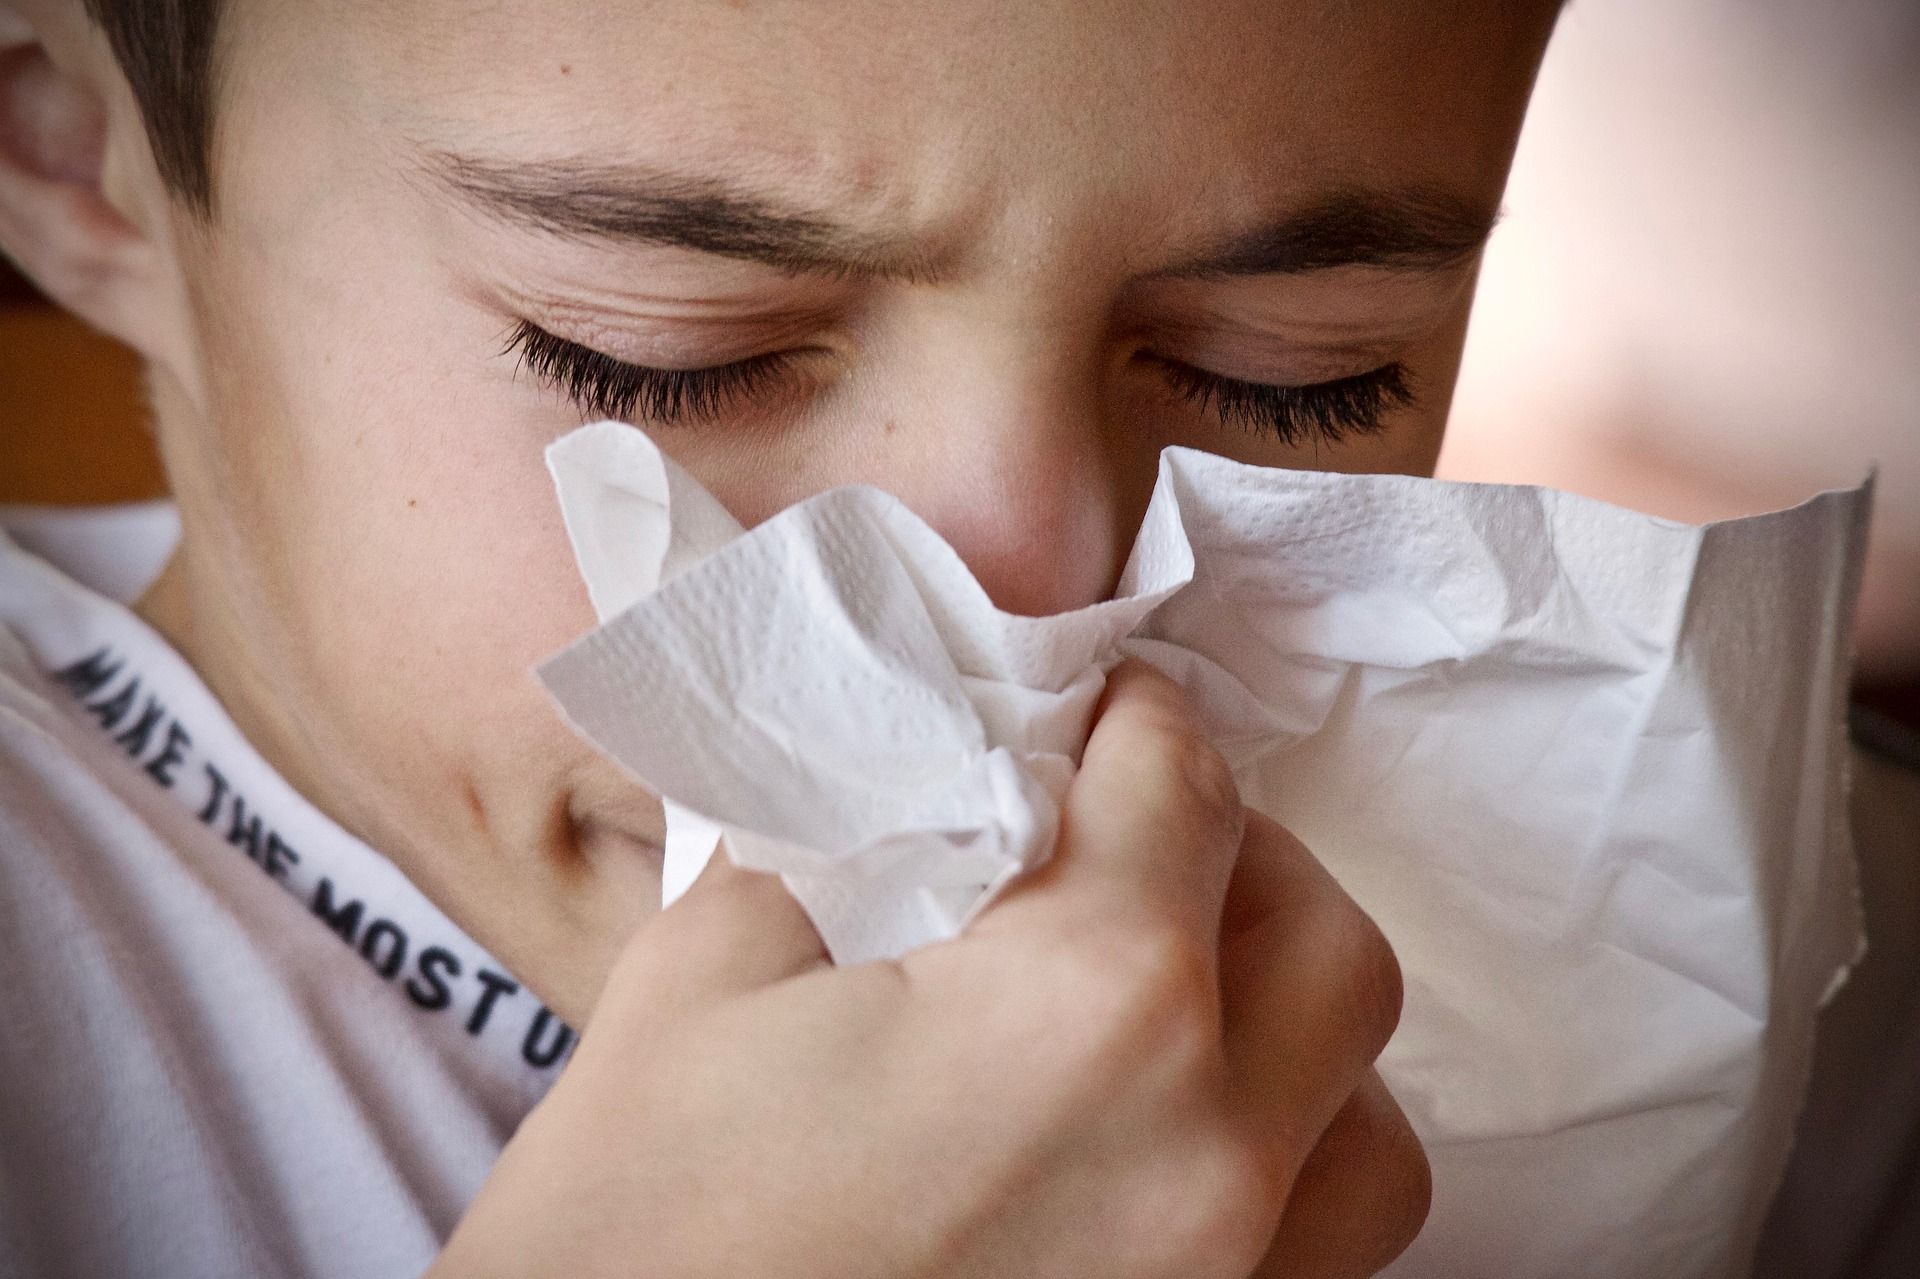 Una persona con alergia, en una imagen de archivo.